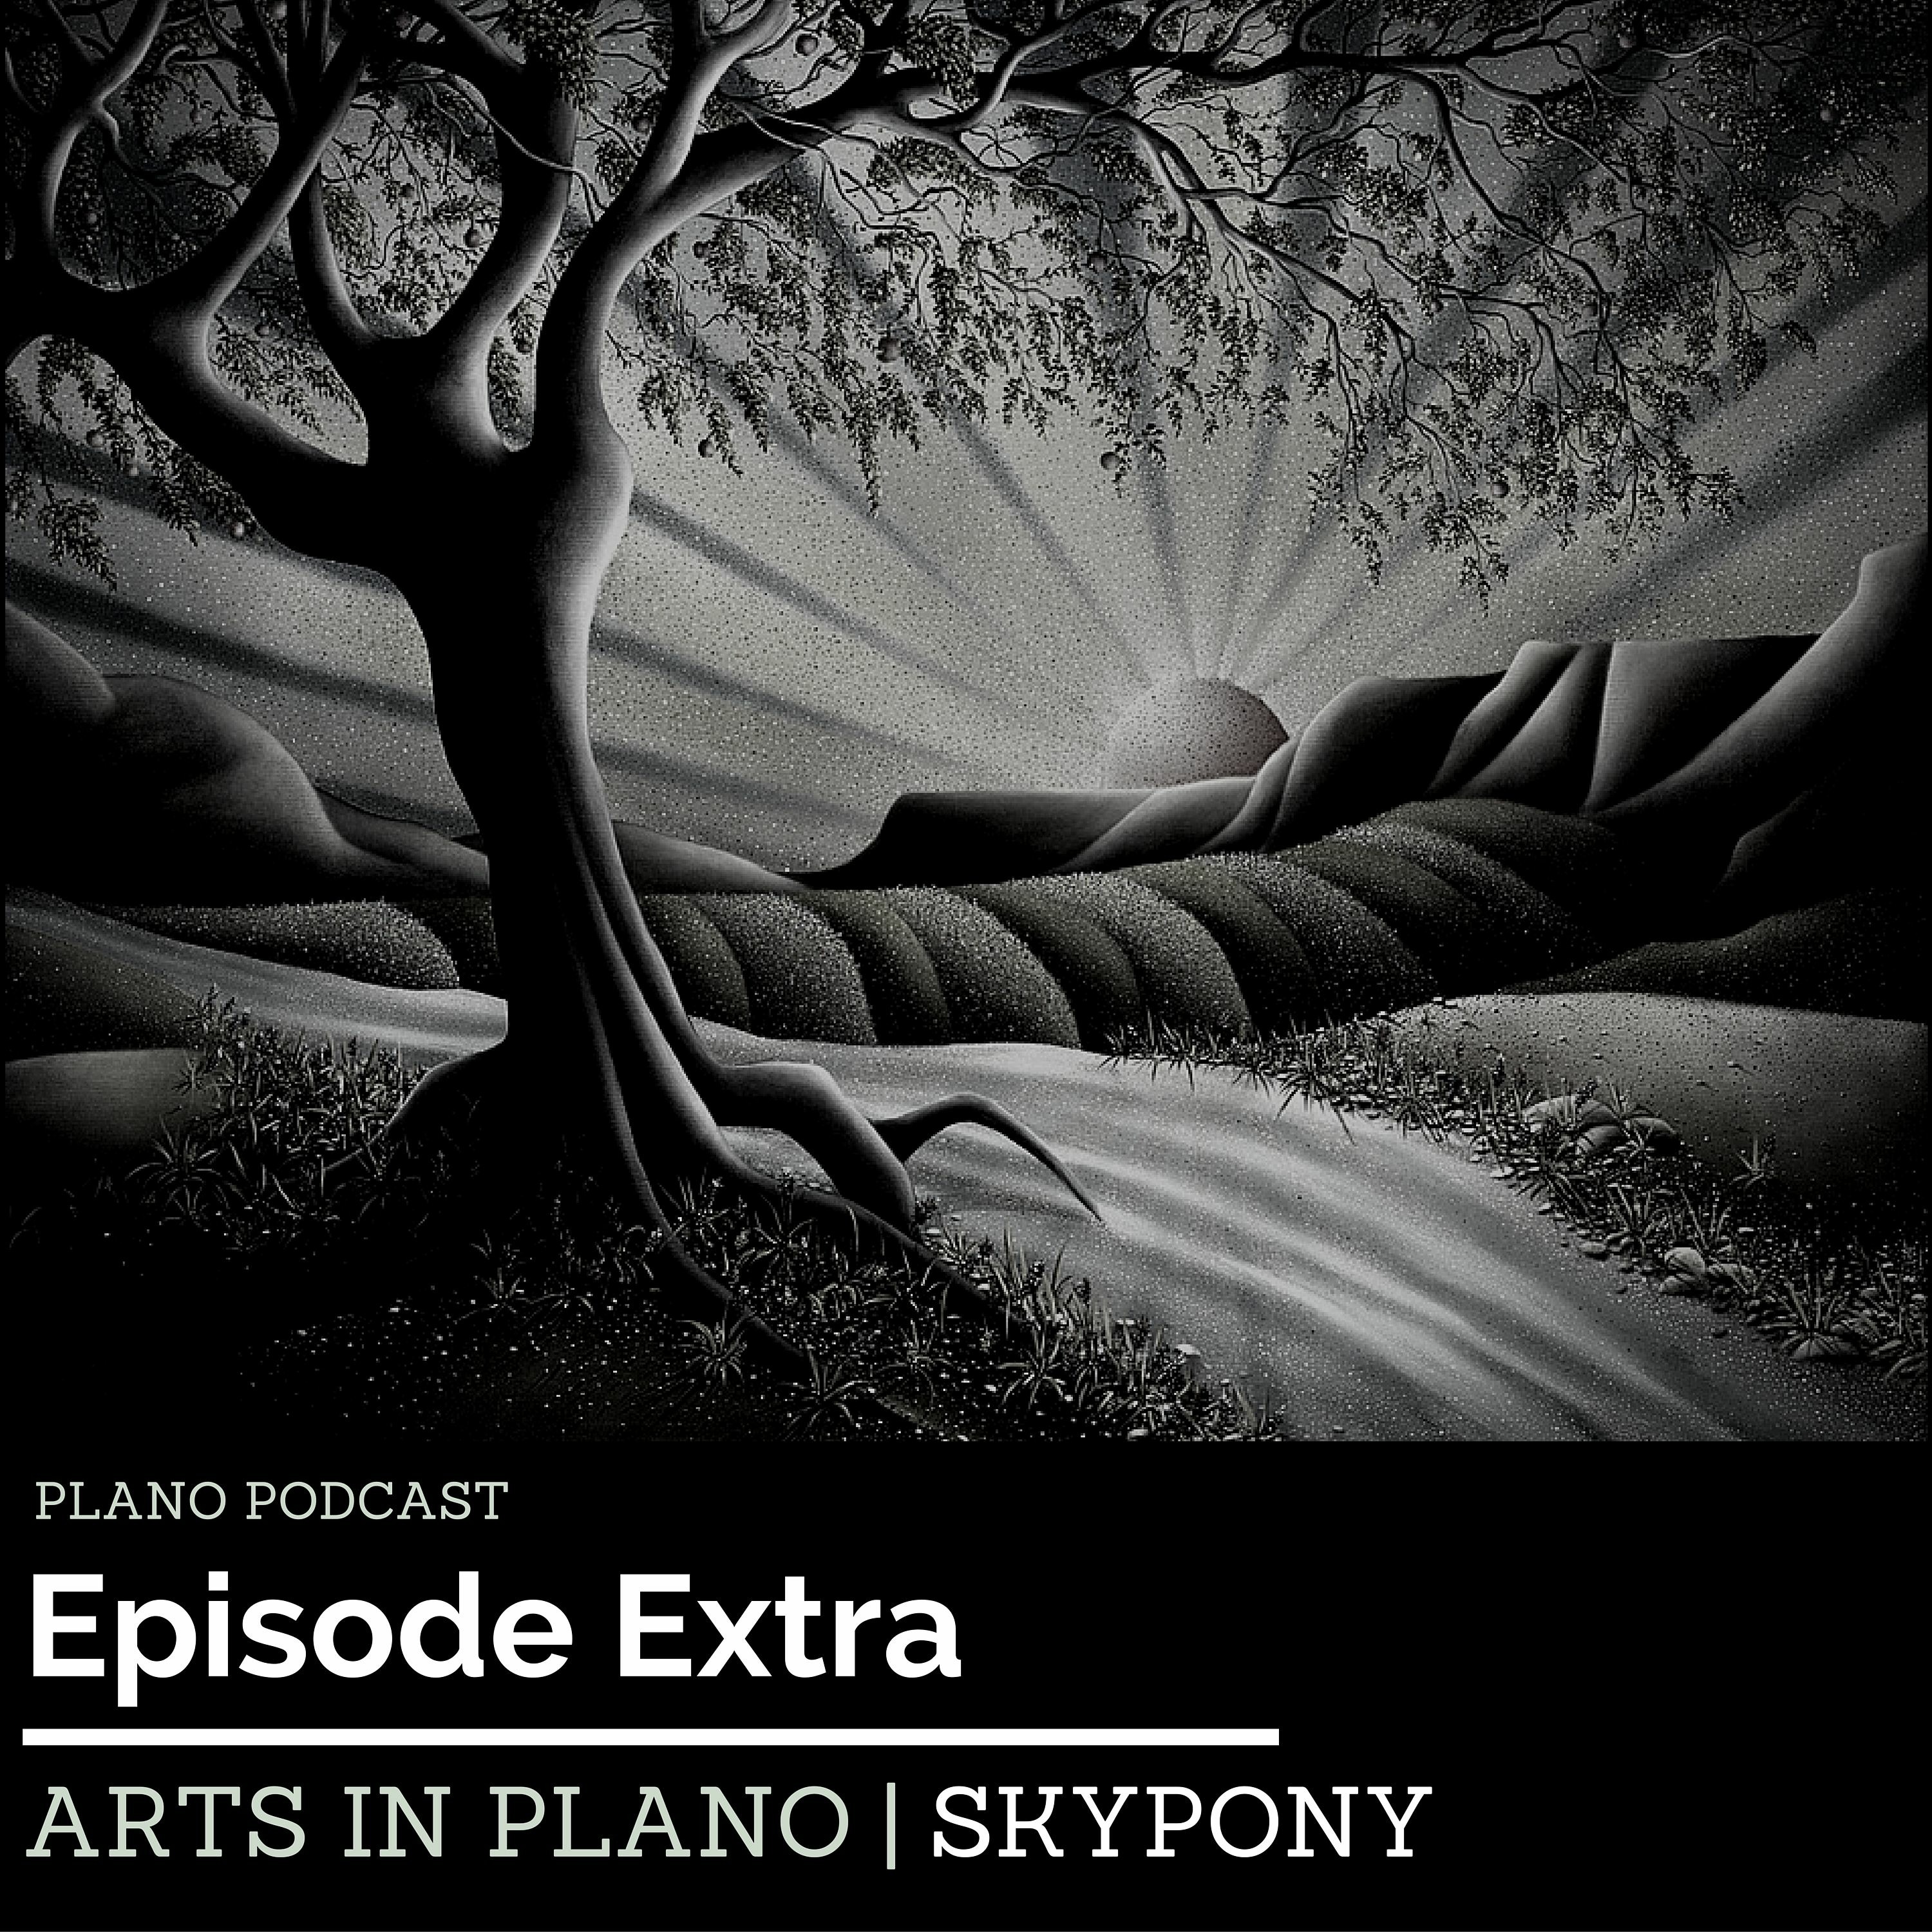 Episode 3 Skypony | Arts In Plano Extra